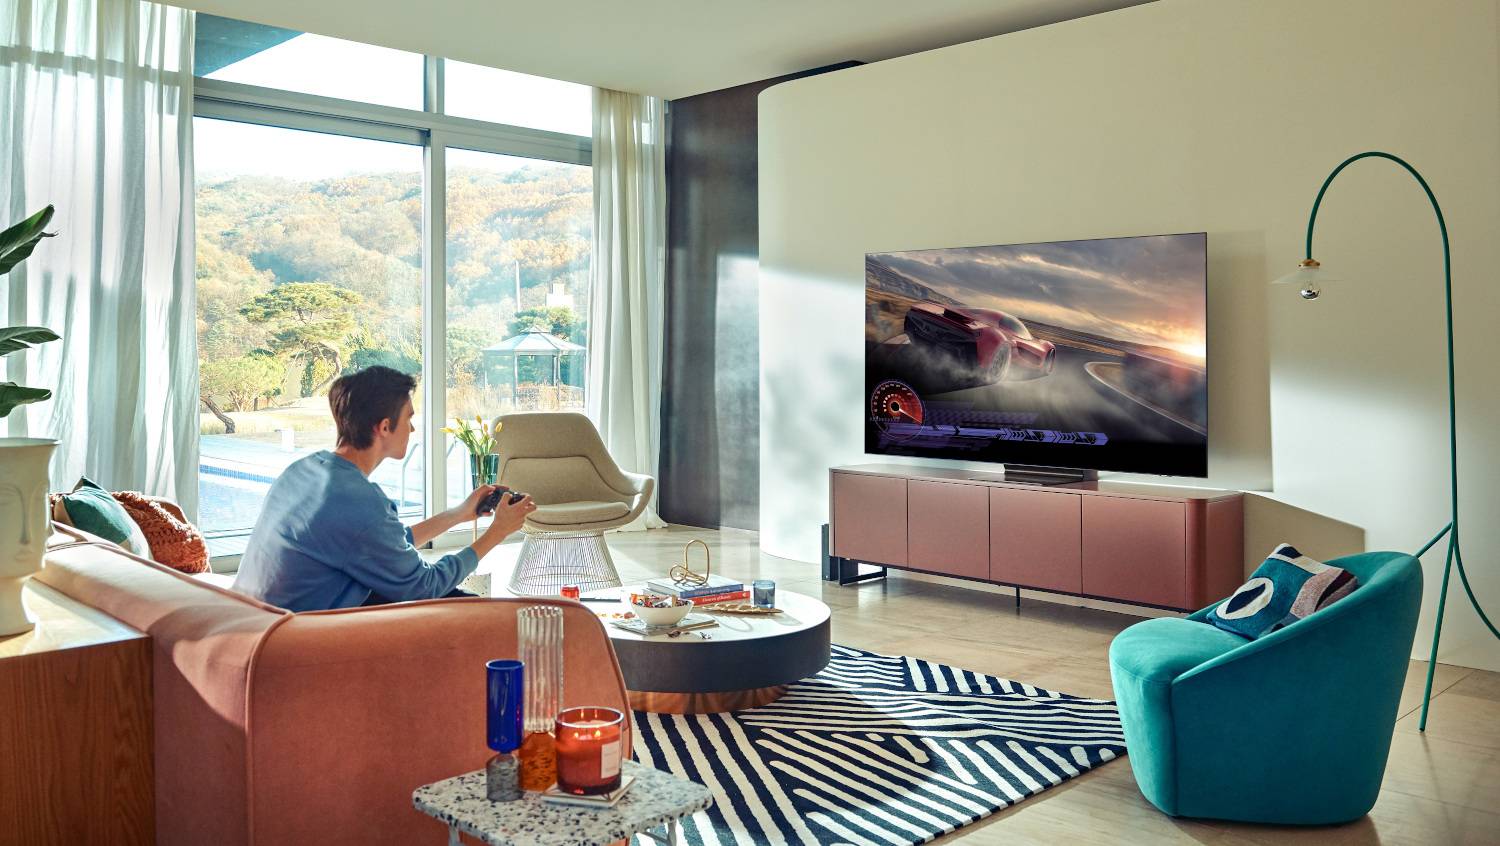 Era Neo QLED tehnologije - doživljaj gledanja televizora nikada nije bio realniji